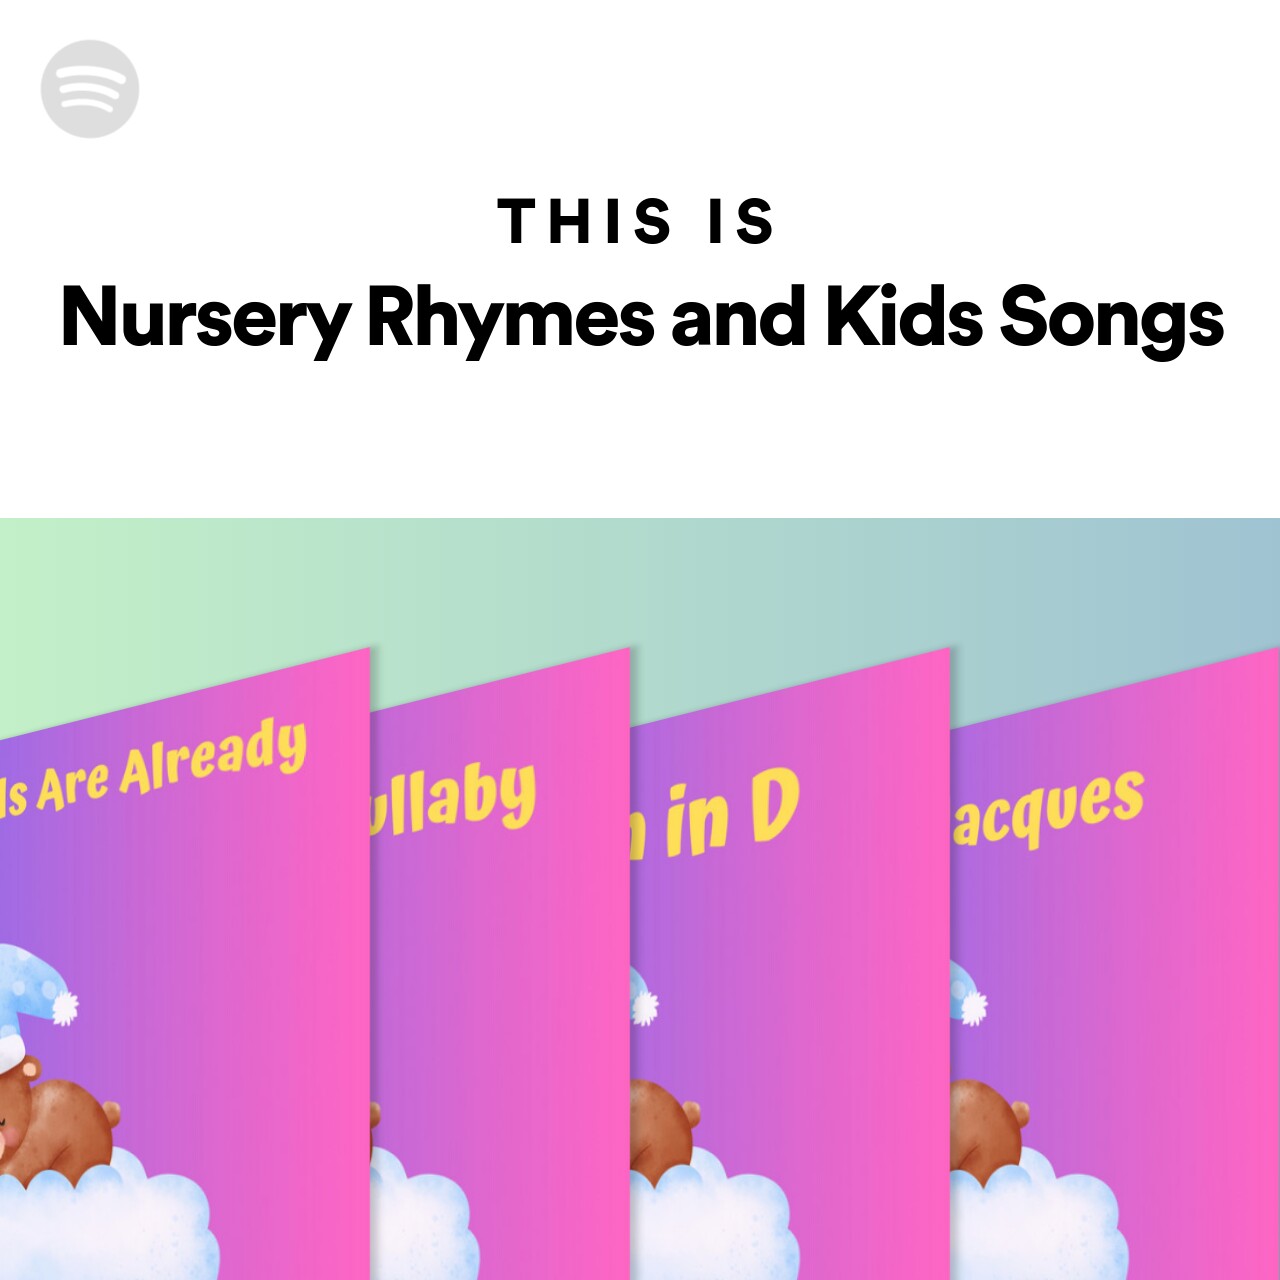 This Is Nursery Rhymes and Kids Songs